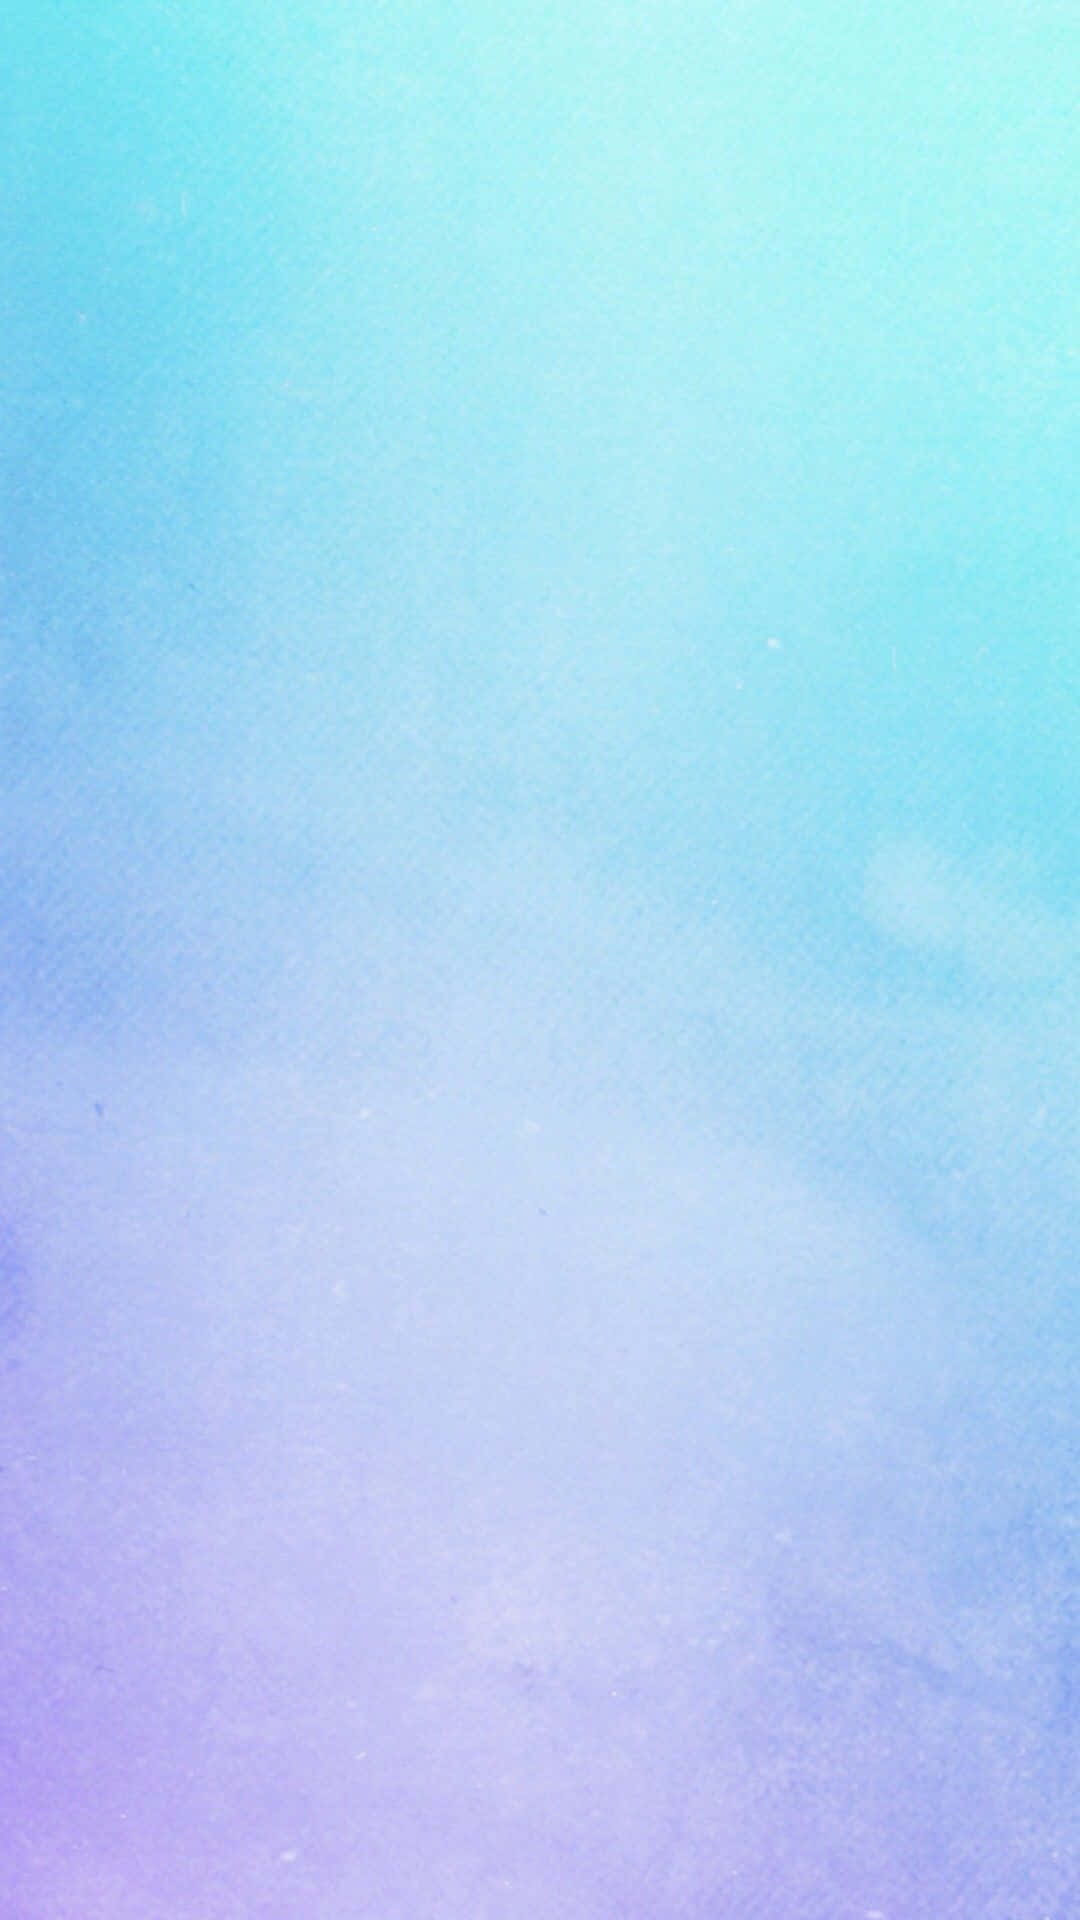 Blauund Lila Farbverlauf Pastell Hintergrund.